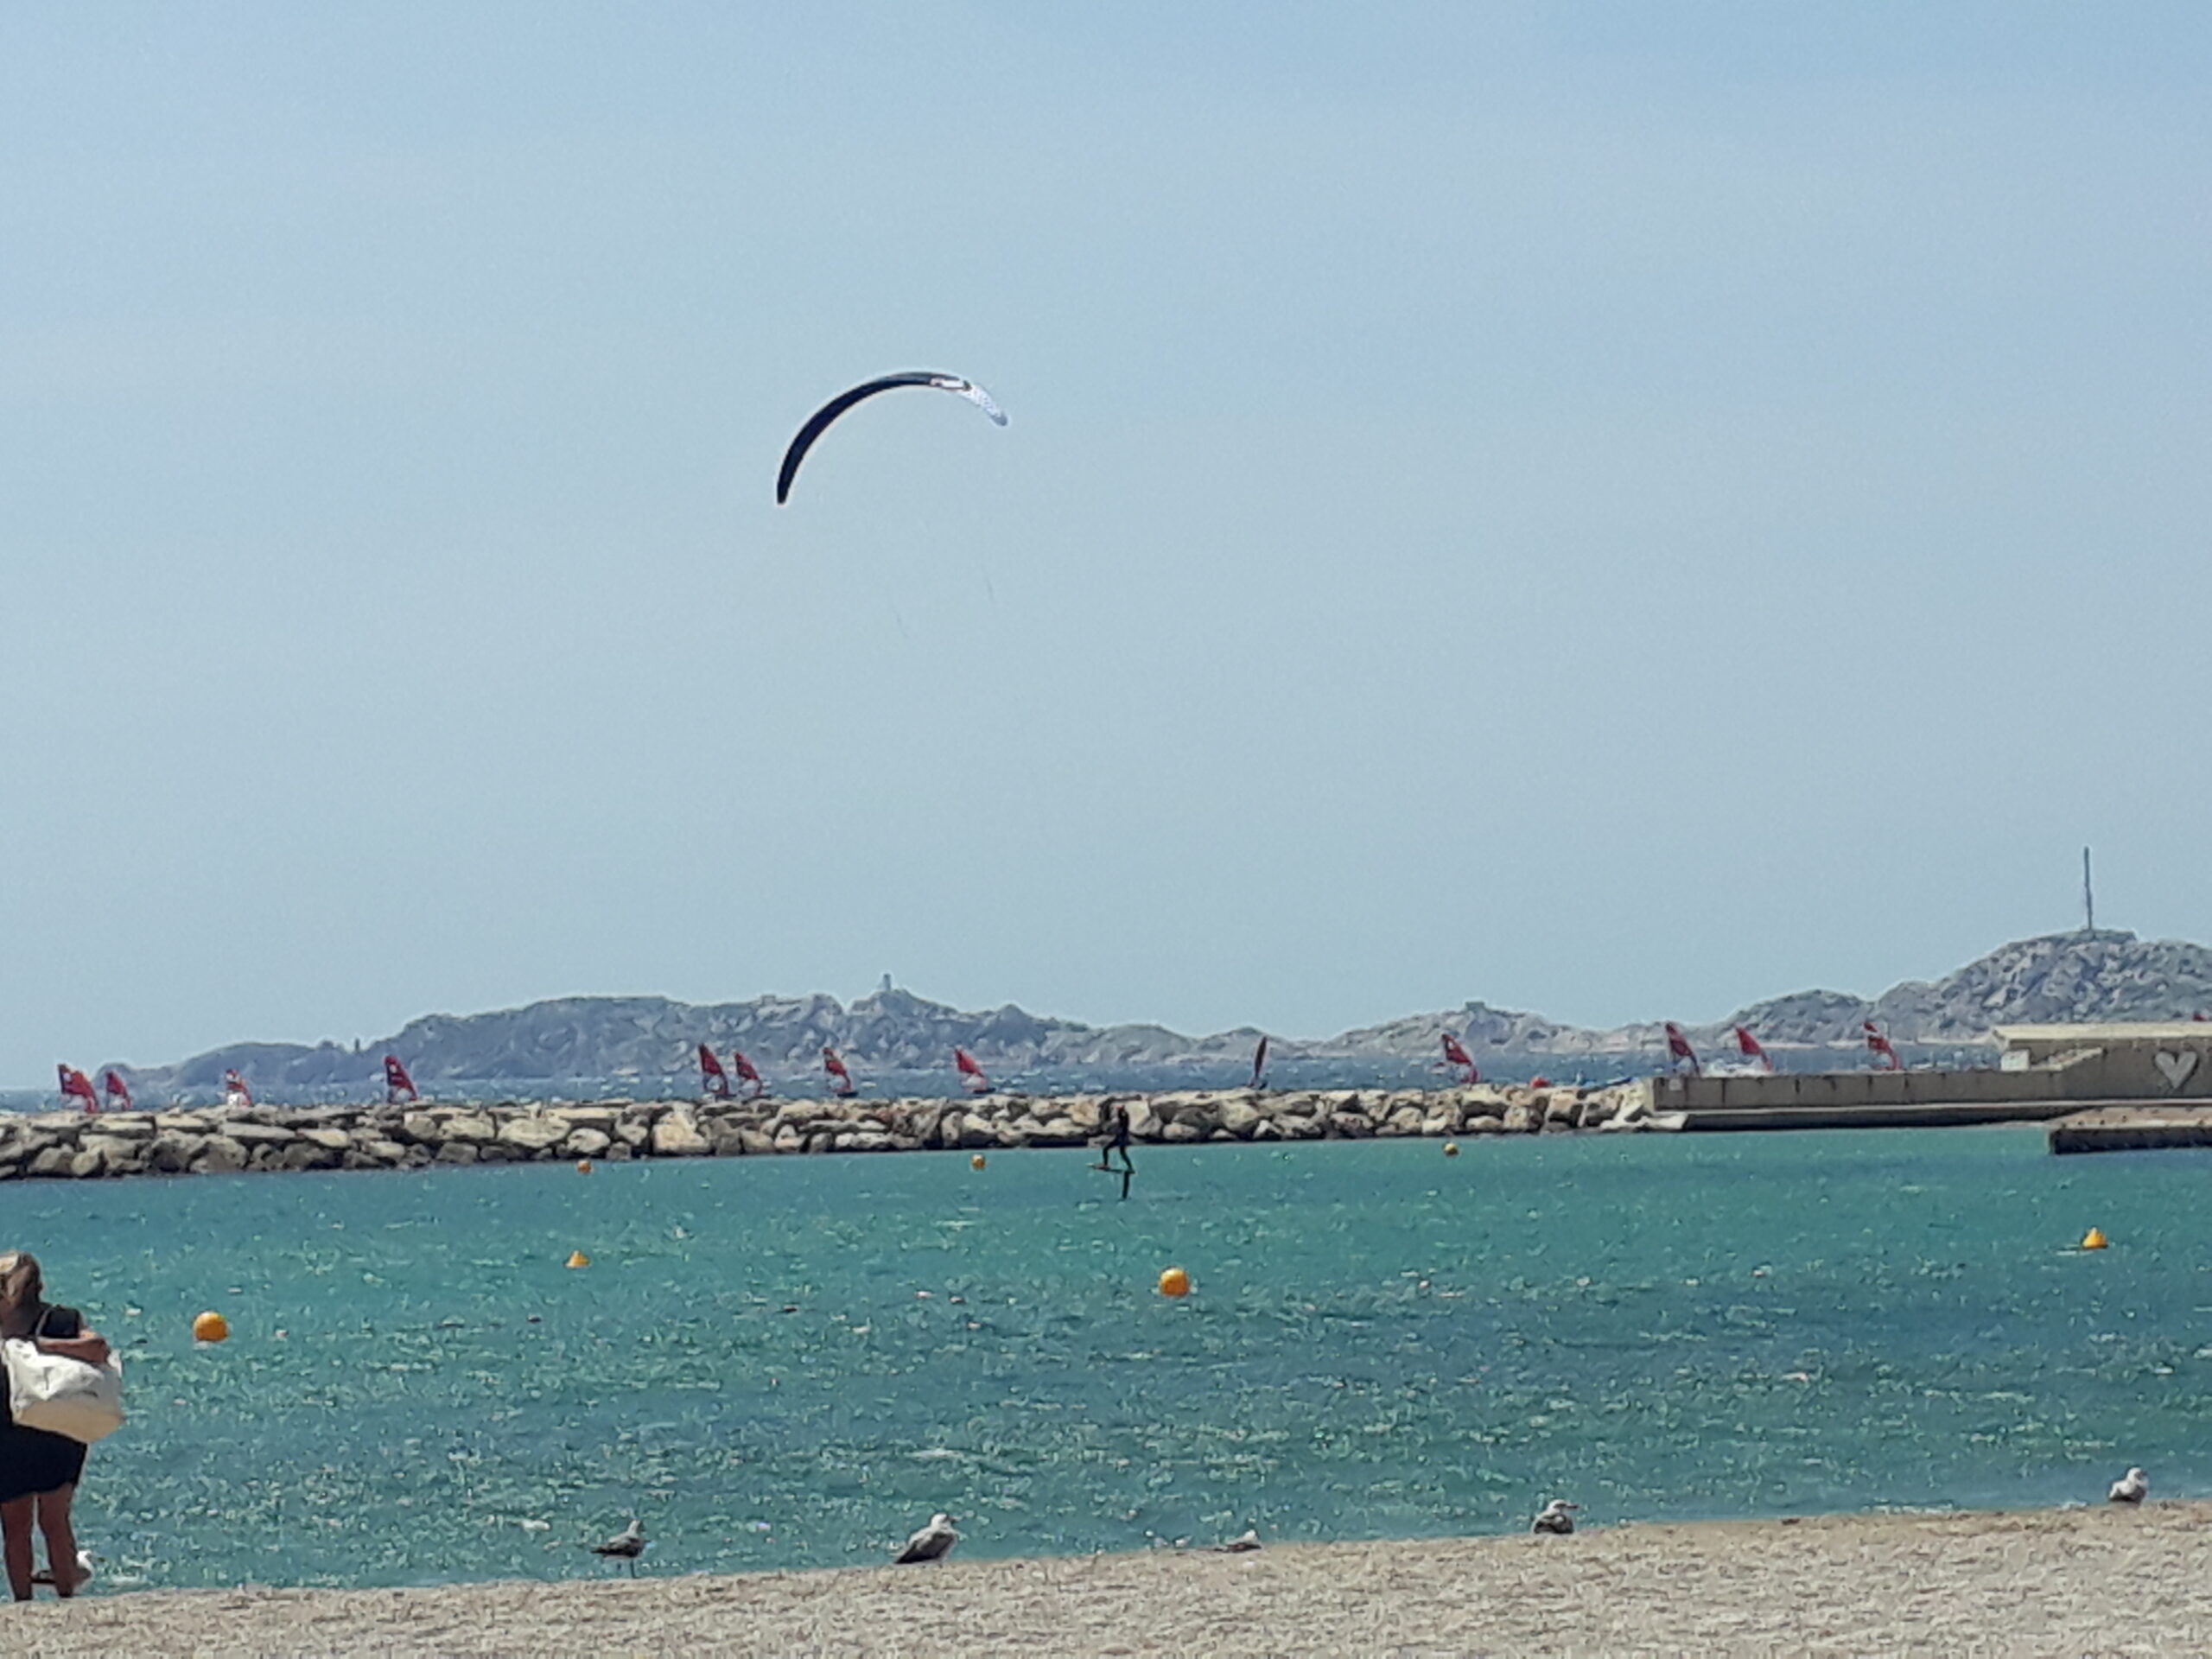 Entraînement de kyte-foil (premier plan) et de QI-foil (second plan) sur le plan de mer privatisé. Photo prise de la plage du Prado Sud